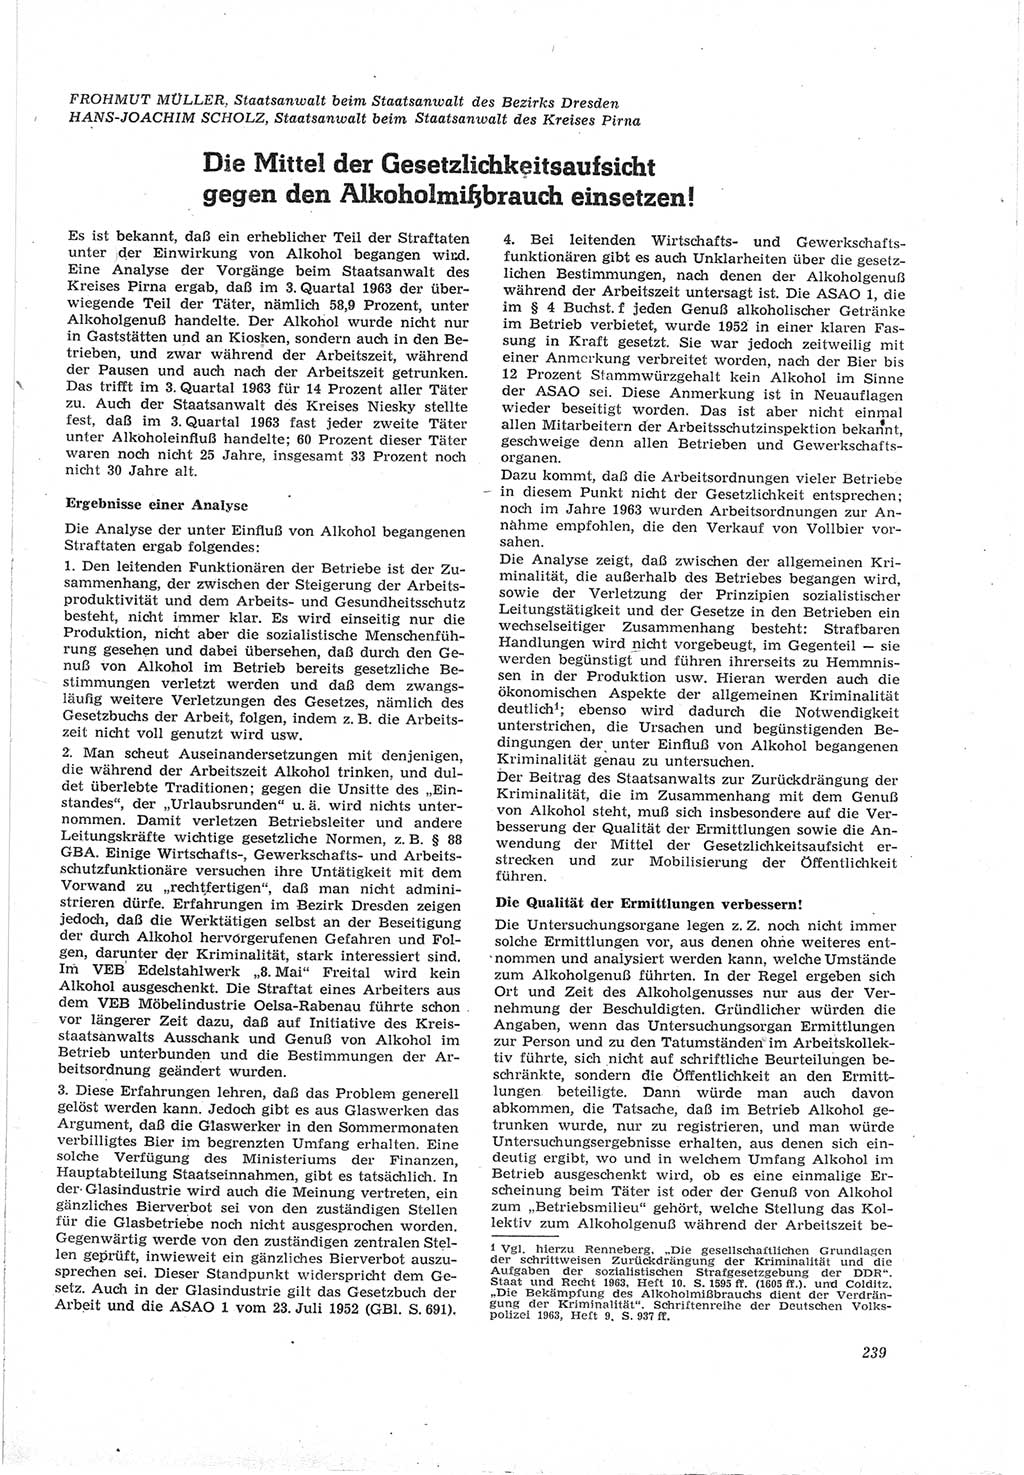 Neue Justiz (NJ), Zeitschrift für Recht und Rechtswissenschaft [Deutsche Demokratische Republik (DDR)], 18. Jahrgang 1964, Seite 239 (NJ DDR 1964, S. 239)